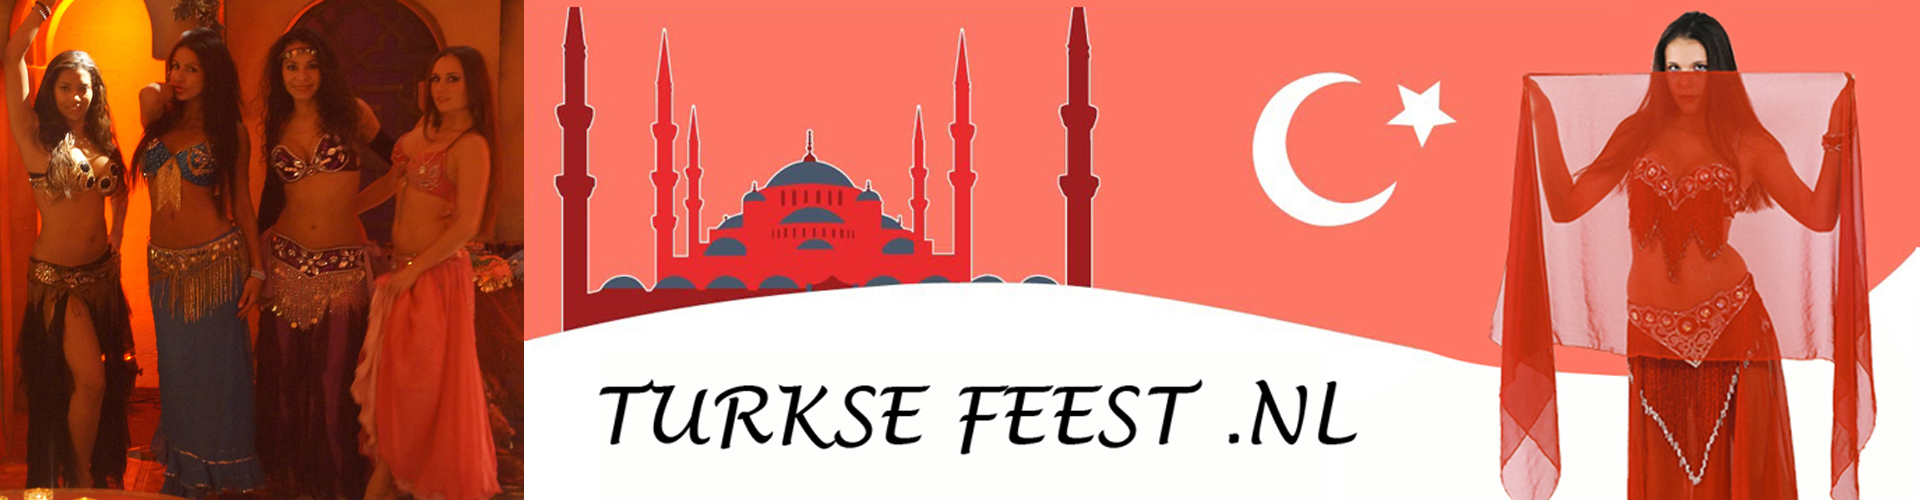 Turkse feest